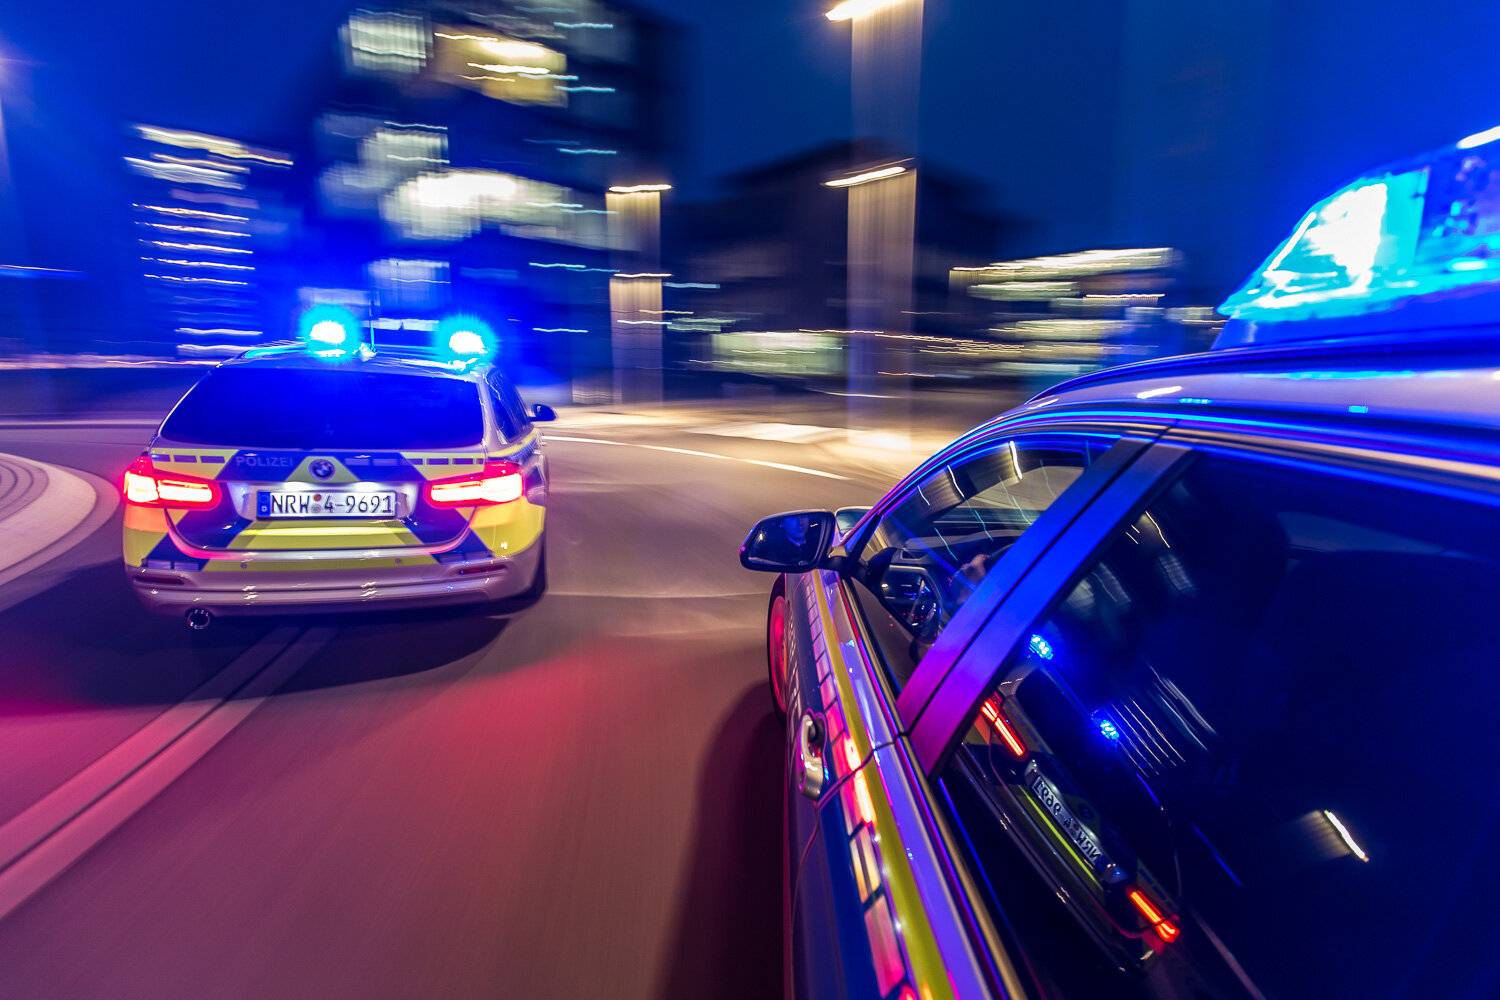 Schlägerei auf dem Hochdahler Markt löste Polizeieinsatz aus